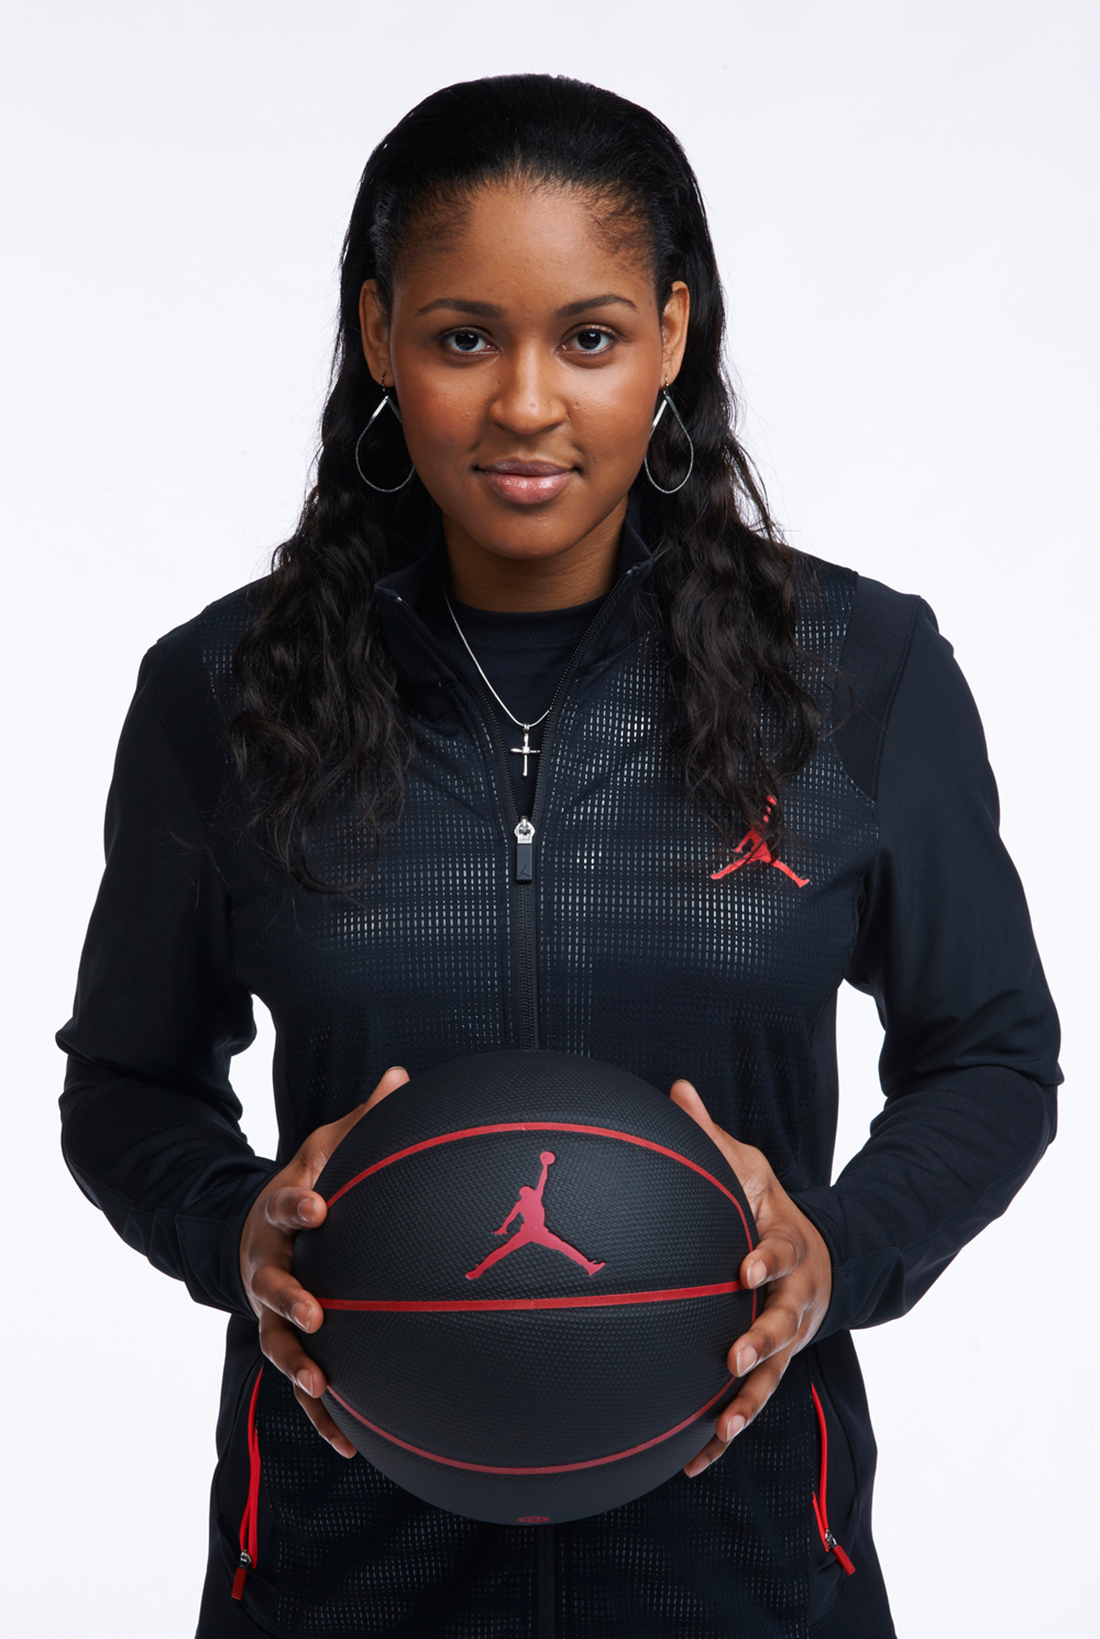 Maya Moore buscando la visibilidad para el basquetbol femenil